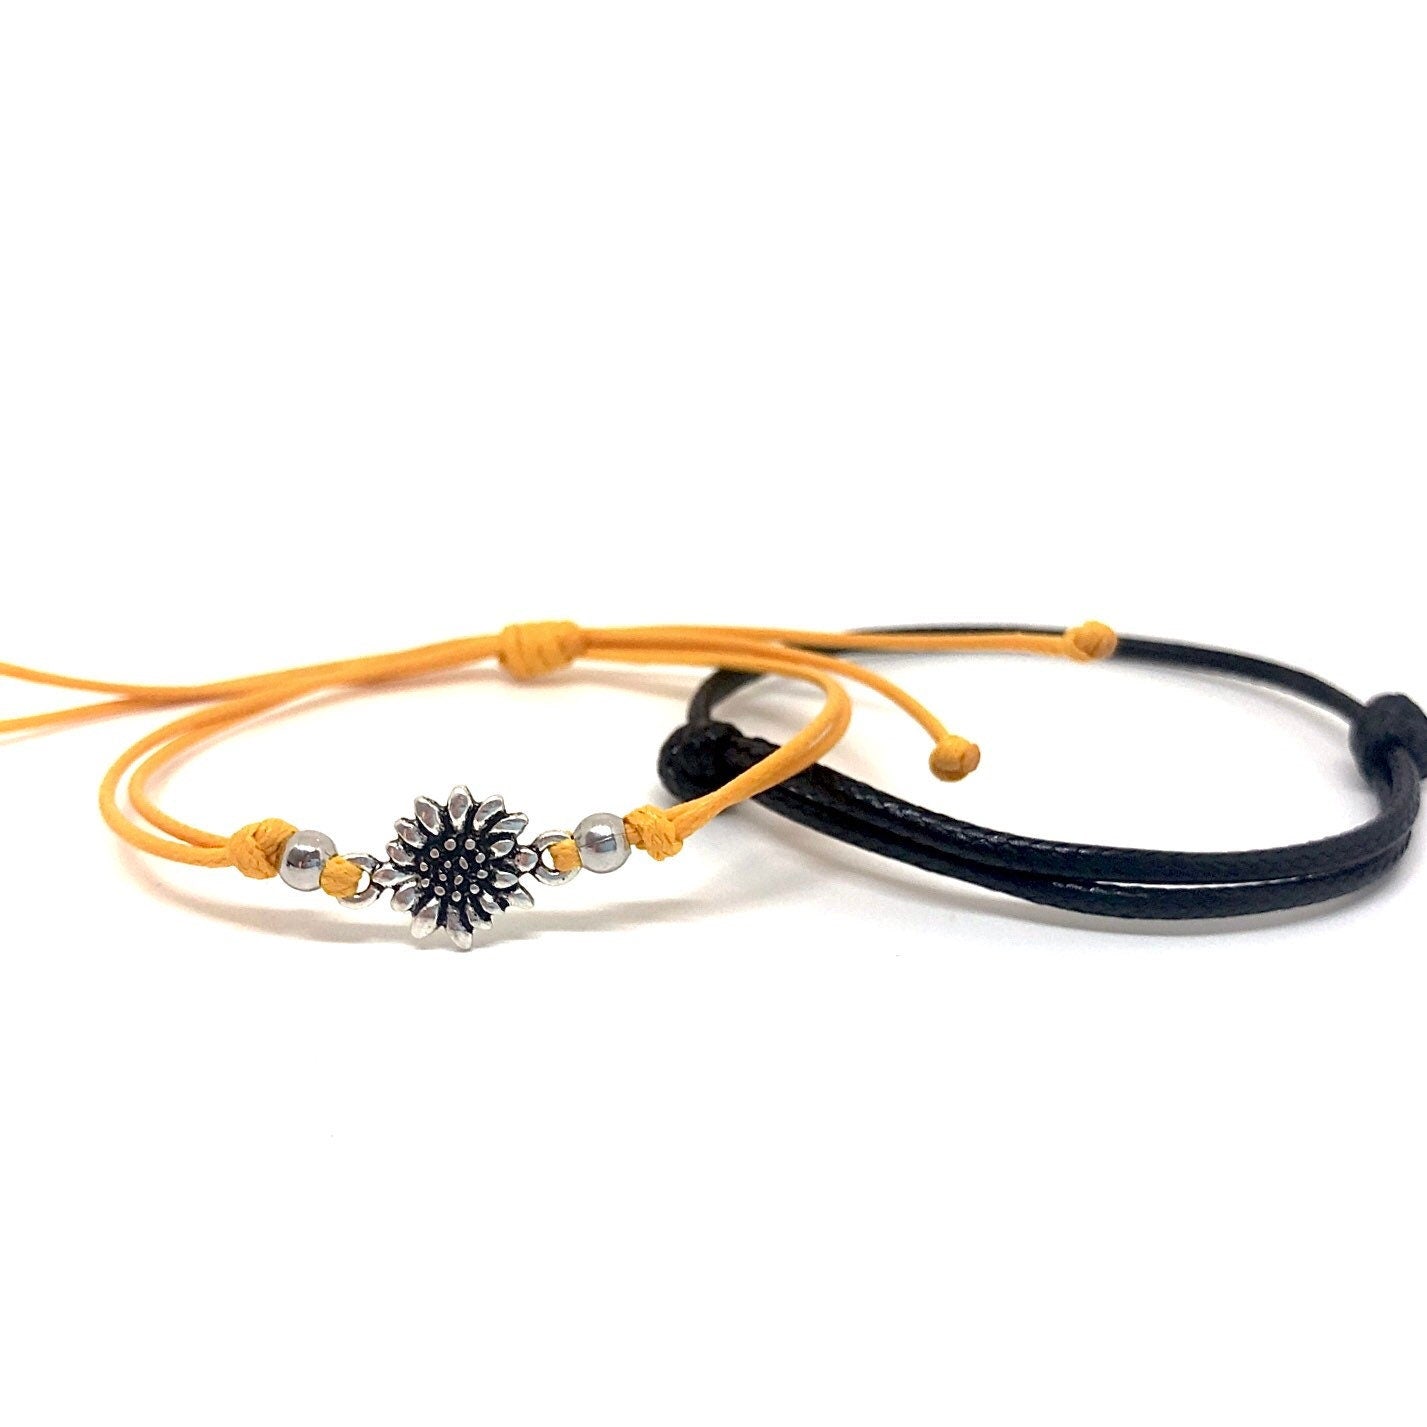 Couples Bracelets, Simple Bracelets, Minimalist Bracelets, His and Hers Bracelets, Sunflower Gift